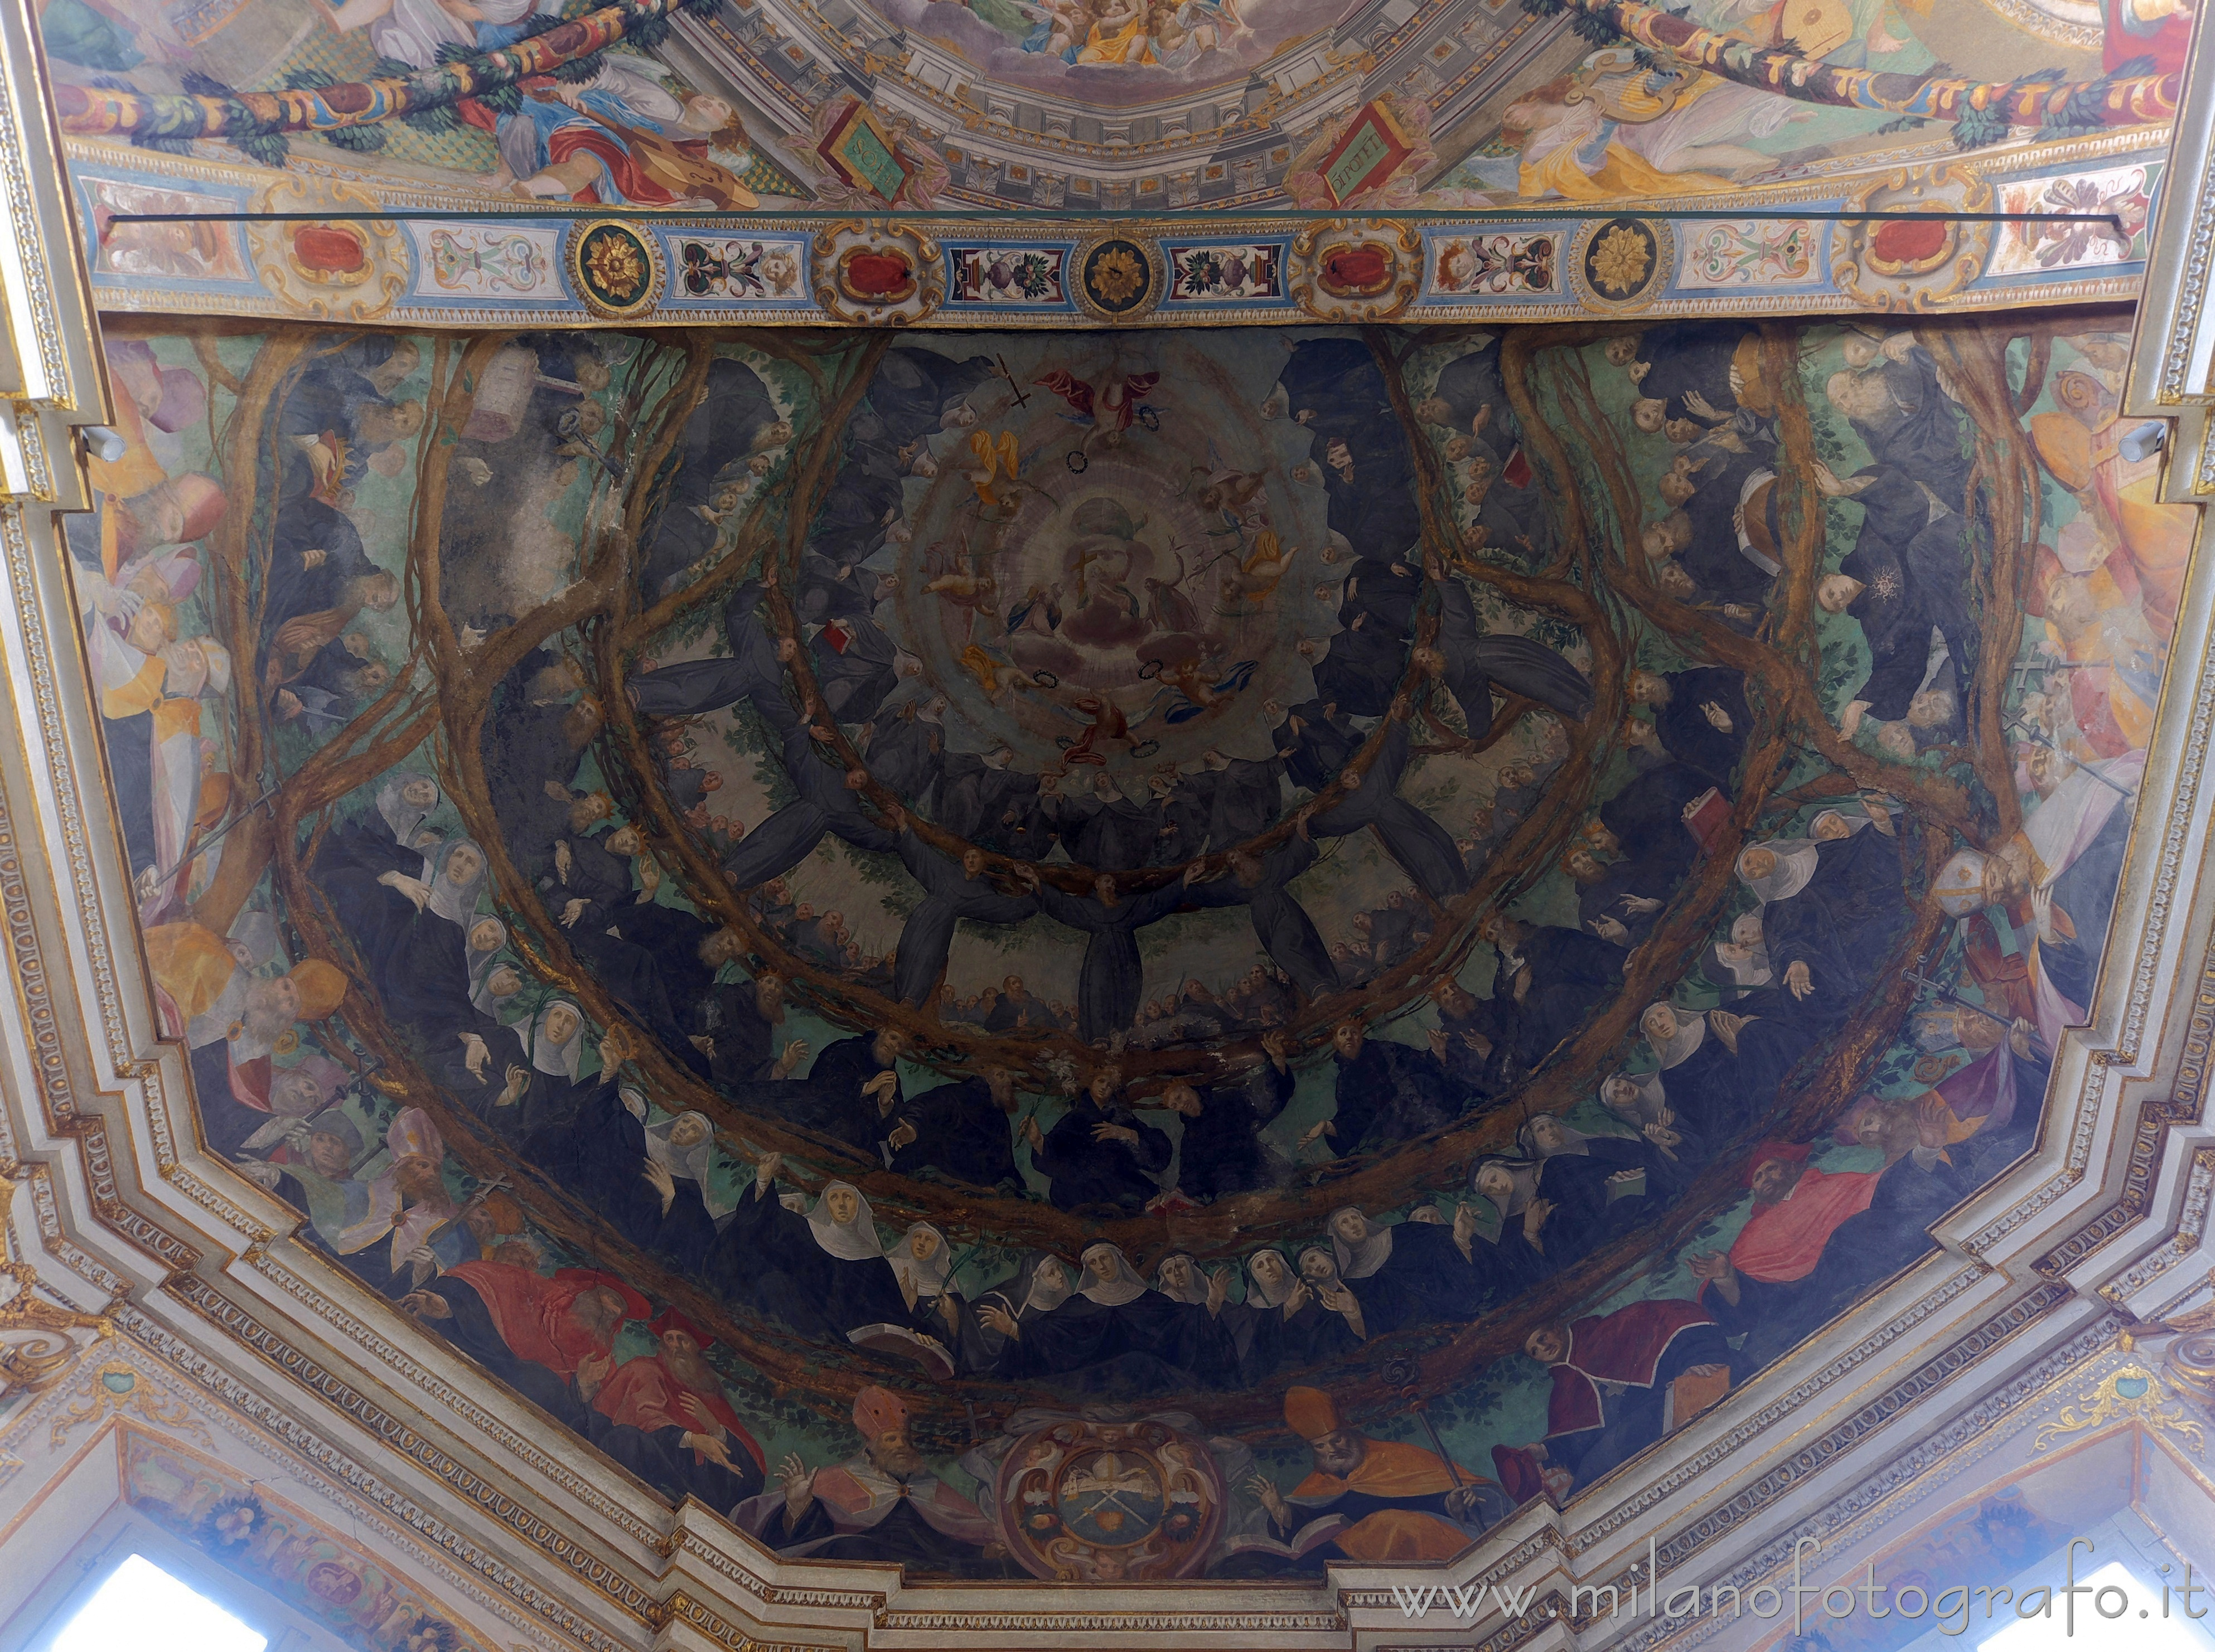 Milano: Volta dell'abside centrale della Basilica di San Marco - Milano